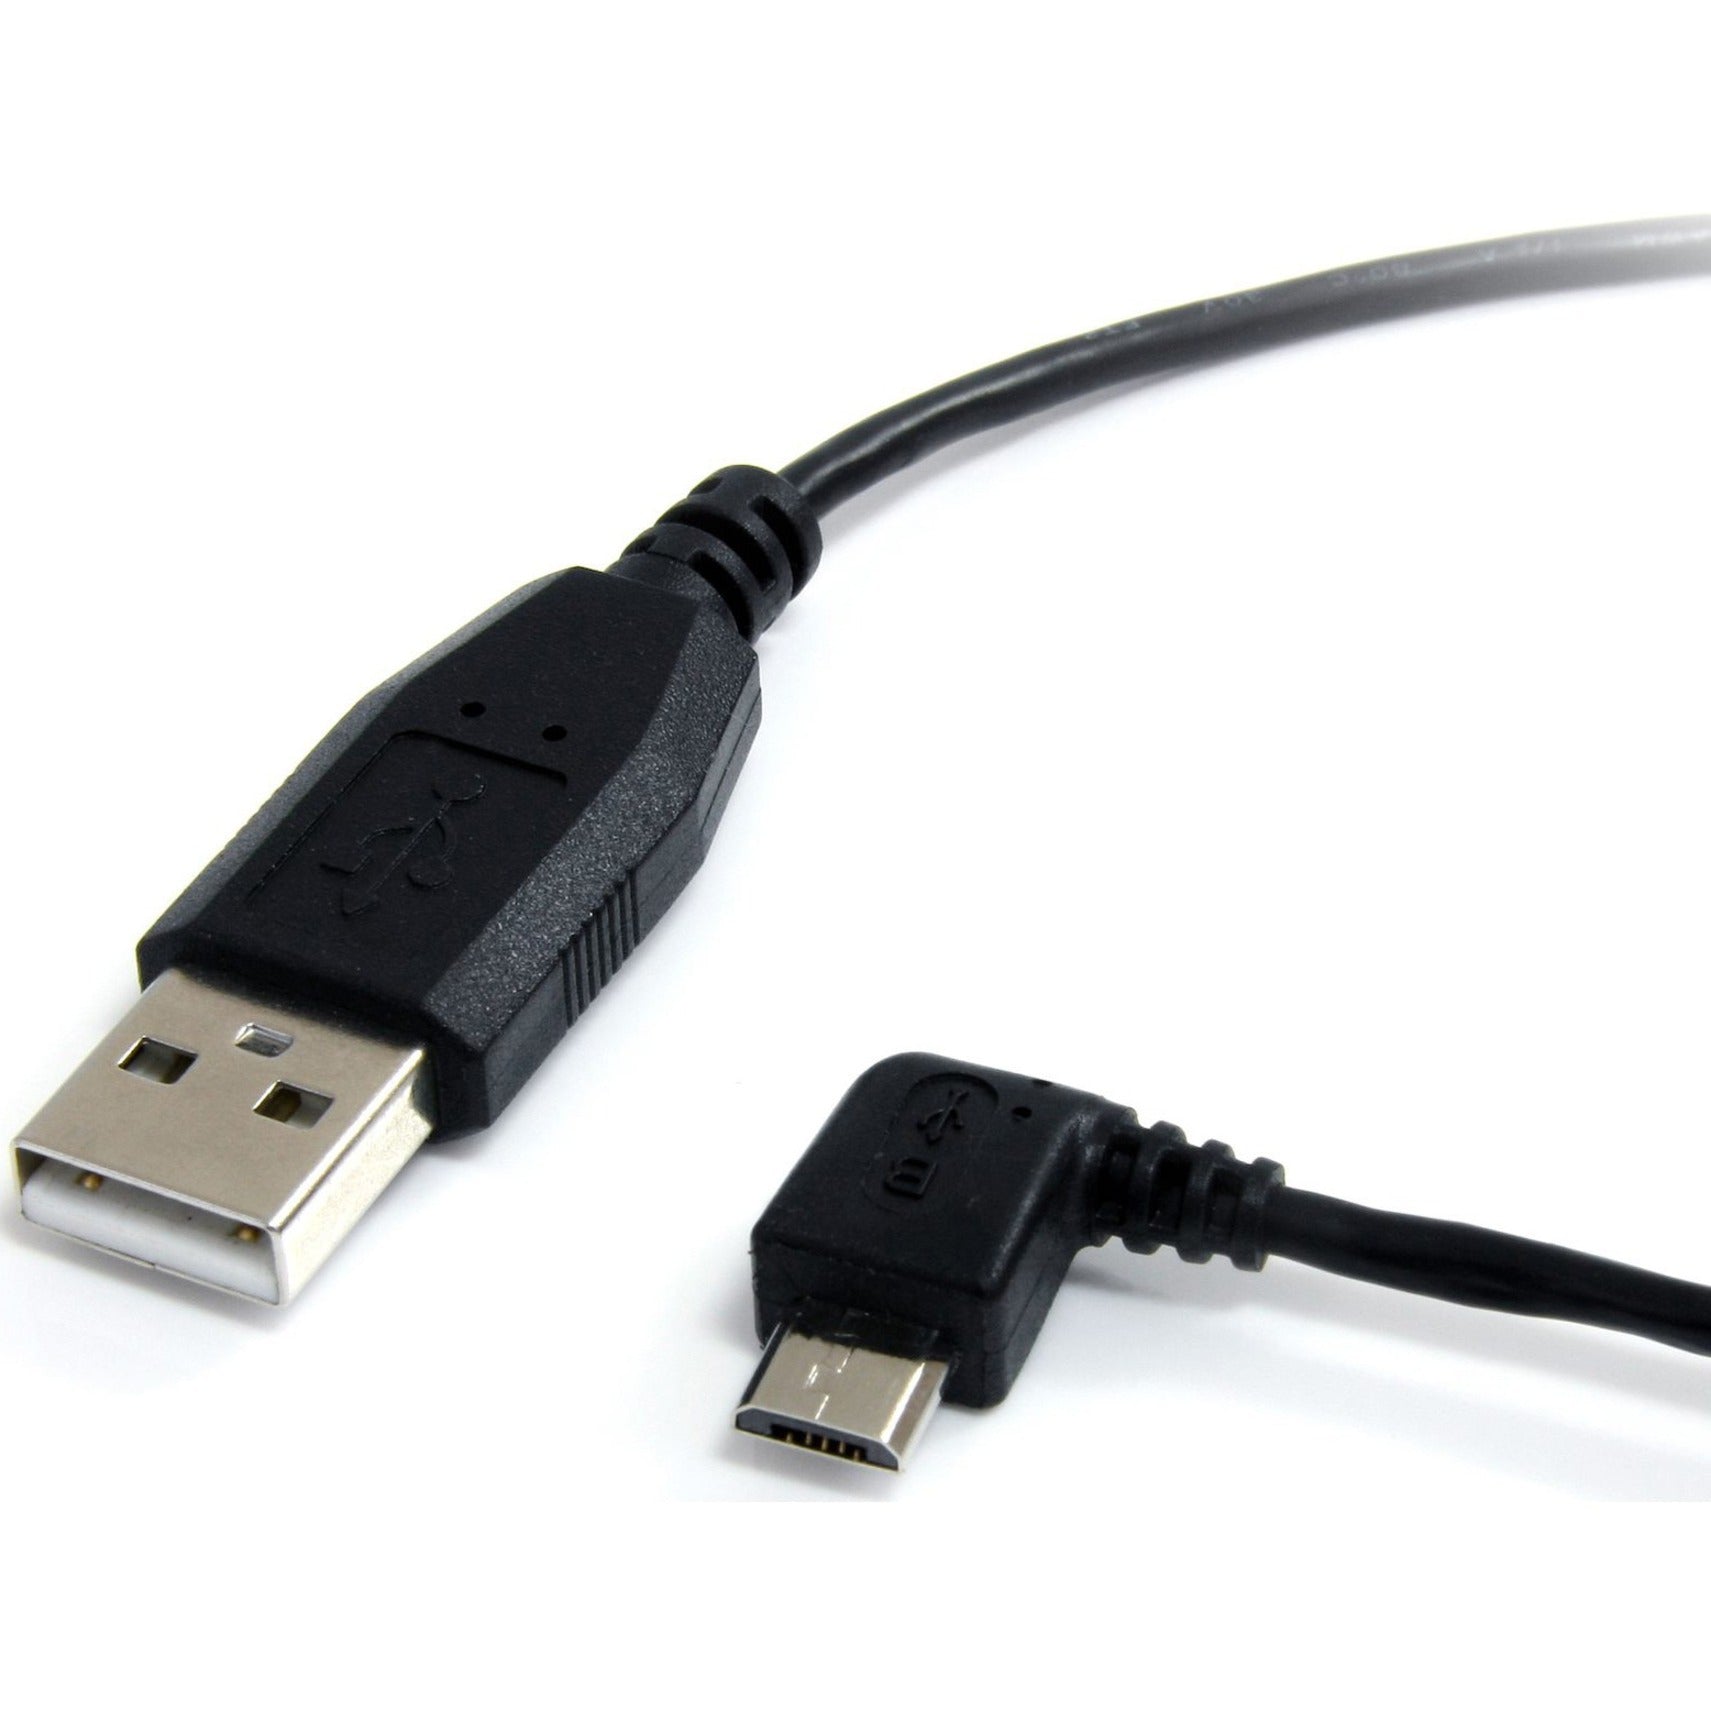 كابل USB صغير 6 قدم - A إلى زاوية يسارية صغيرة B، شحن، إغاثة من التوتر، مصبوب StarTech.com